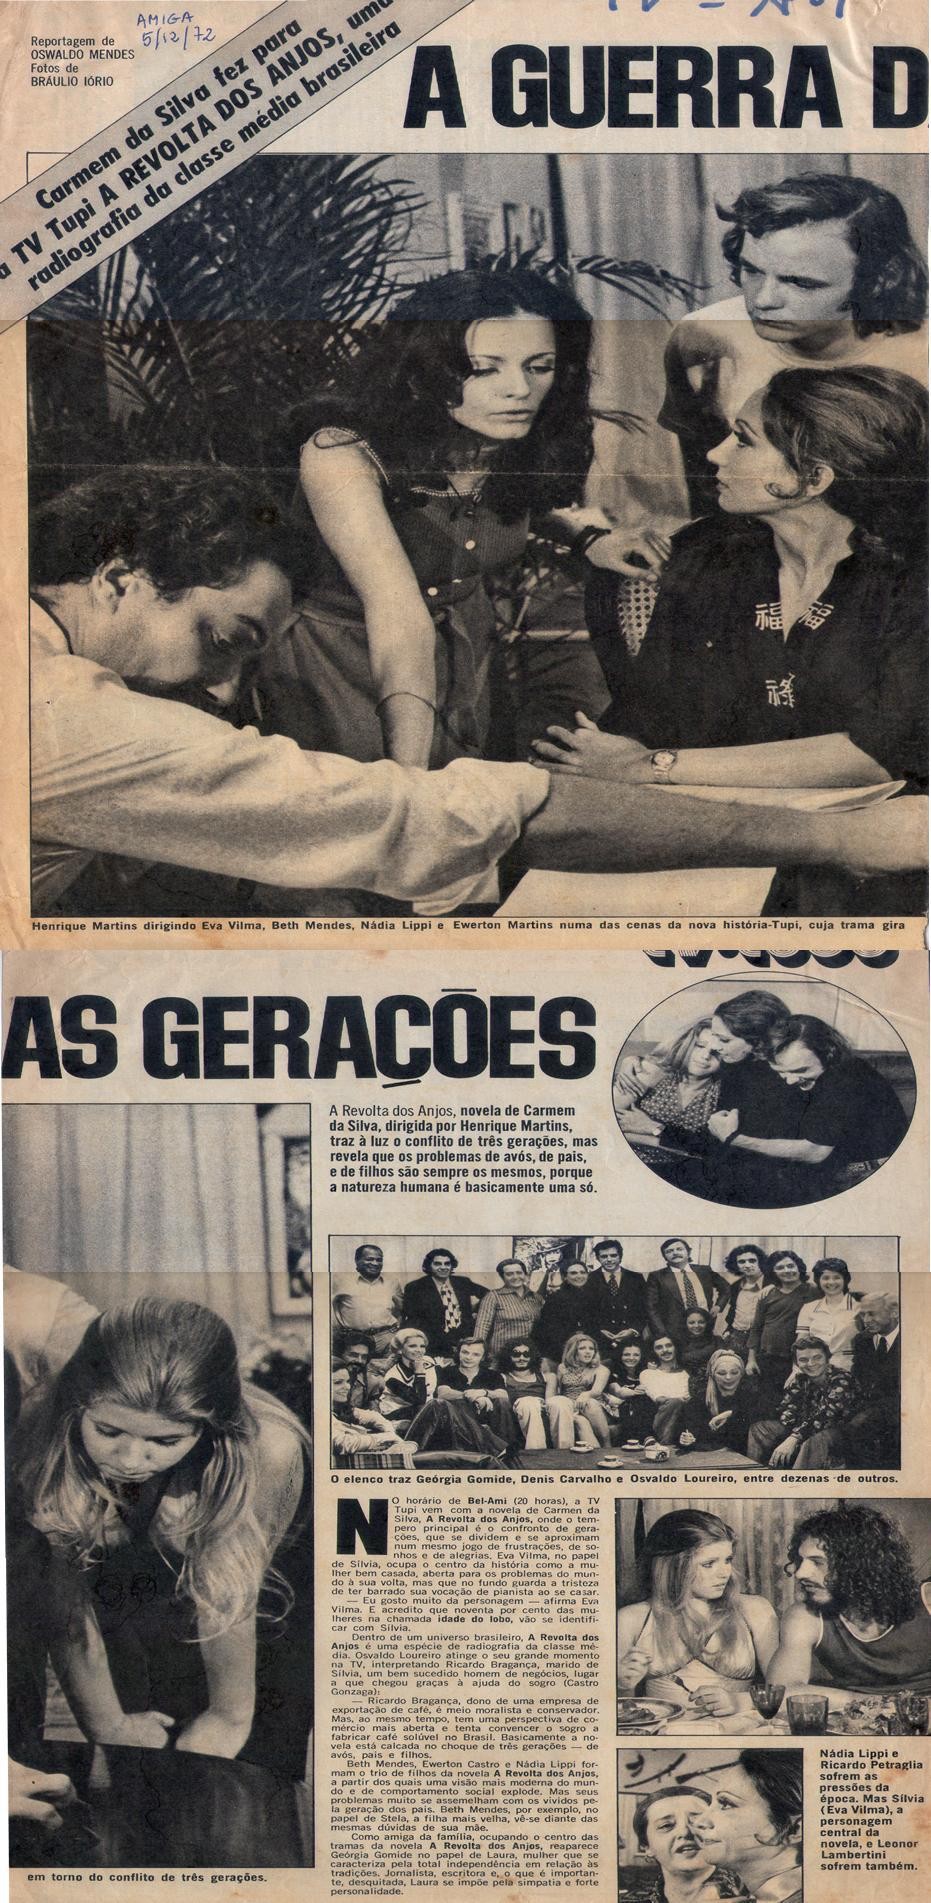 05 de Dezembro de 1972 - Amiga. A guerra das gerações.